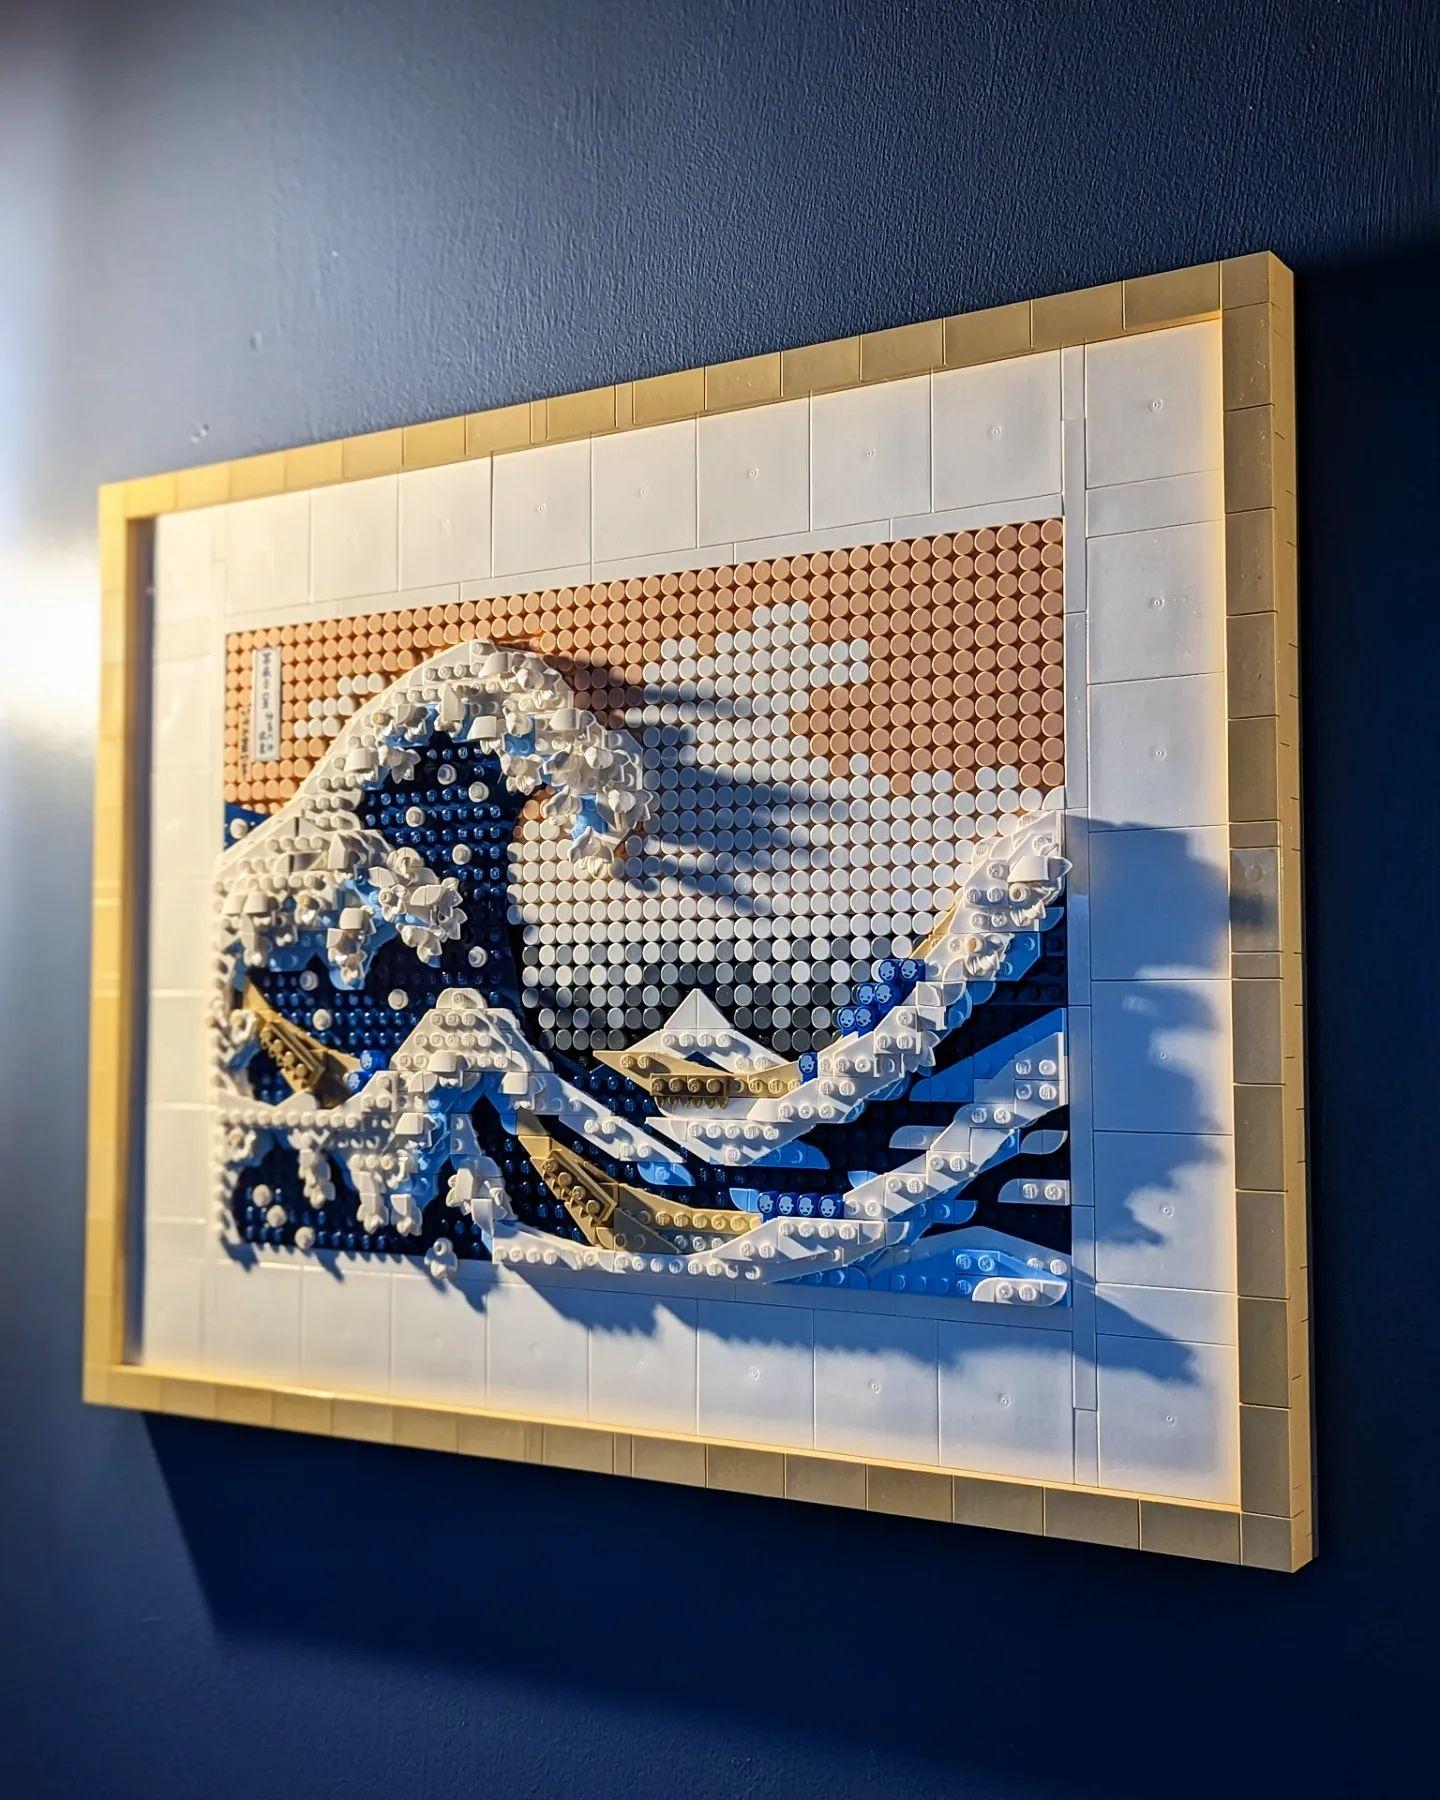 Lego art 31208 hokusai - la grande onda, hobby creativi per adulti fai da te,  decorazioni casa, quadri soggiorno, idee regalo - Toys Center